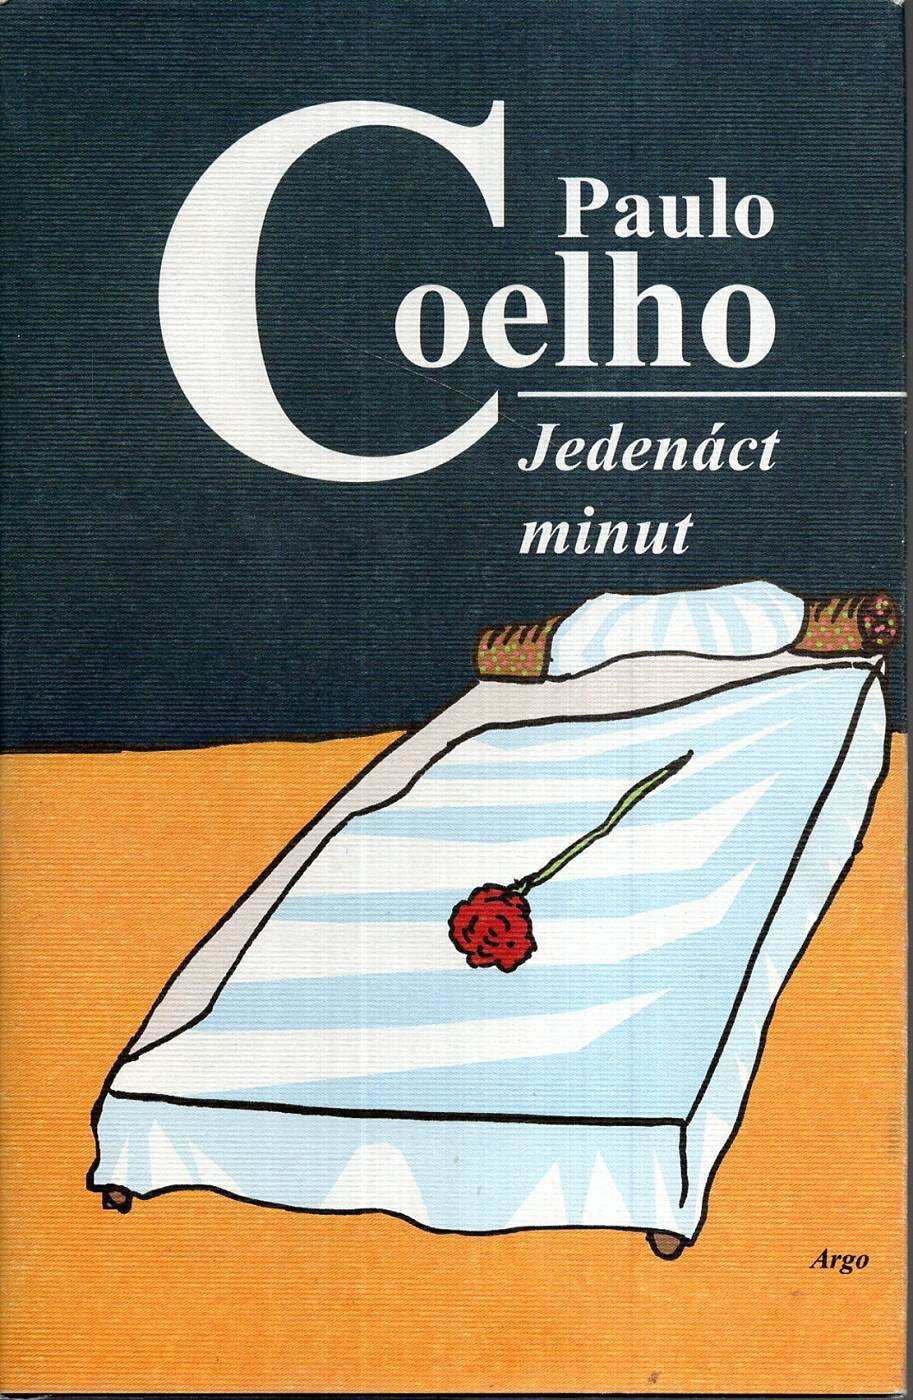 Coelho, Paulo – Jedenáct minut